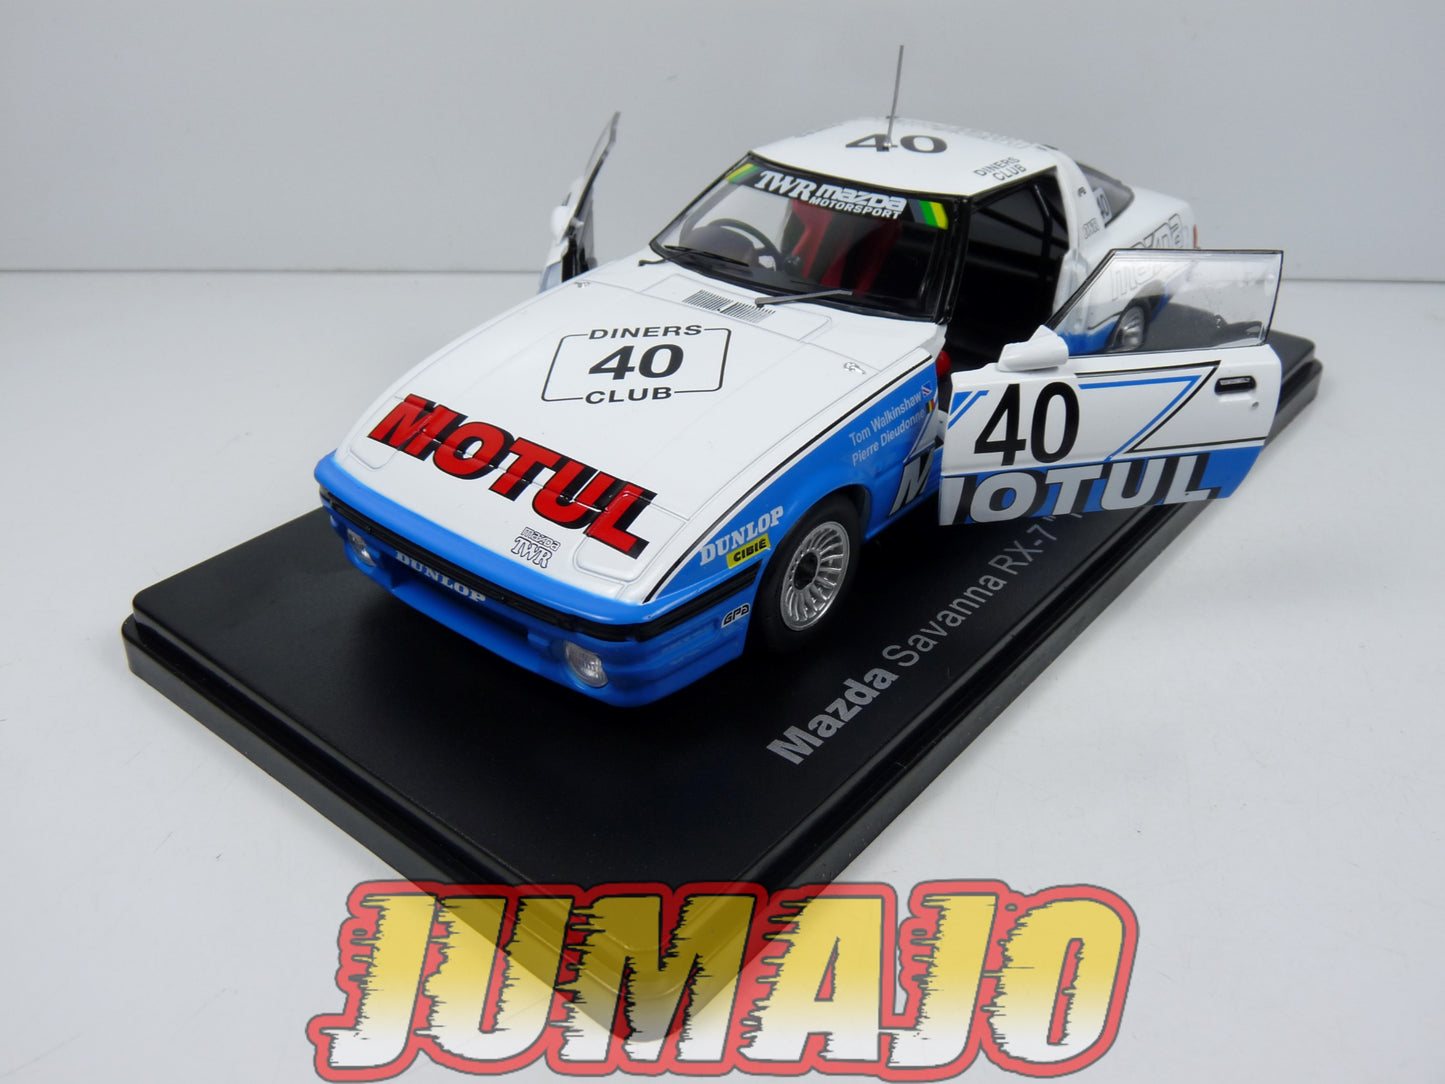 VQJ184 Voiture 1/24 Hachette Japon MAZDA Savanna RX7 TWR rallye 24h Spa #40 1981